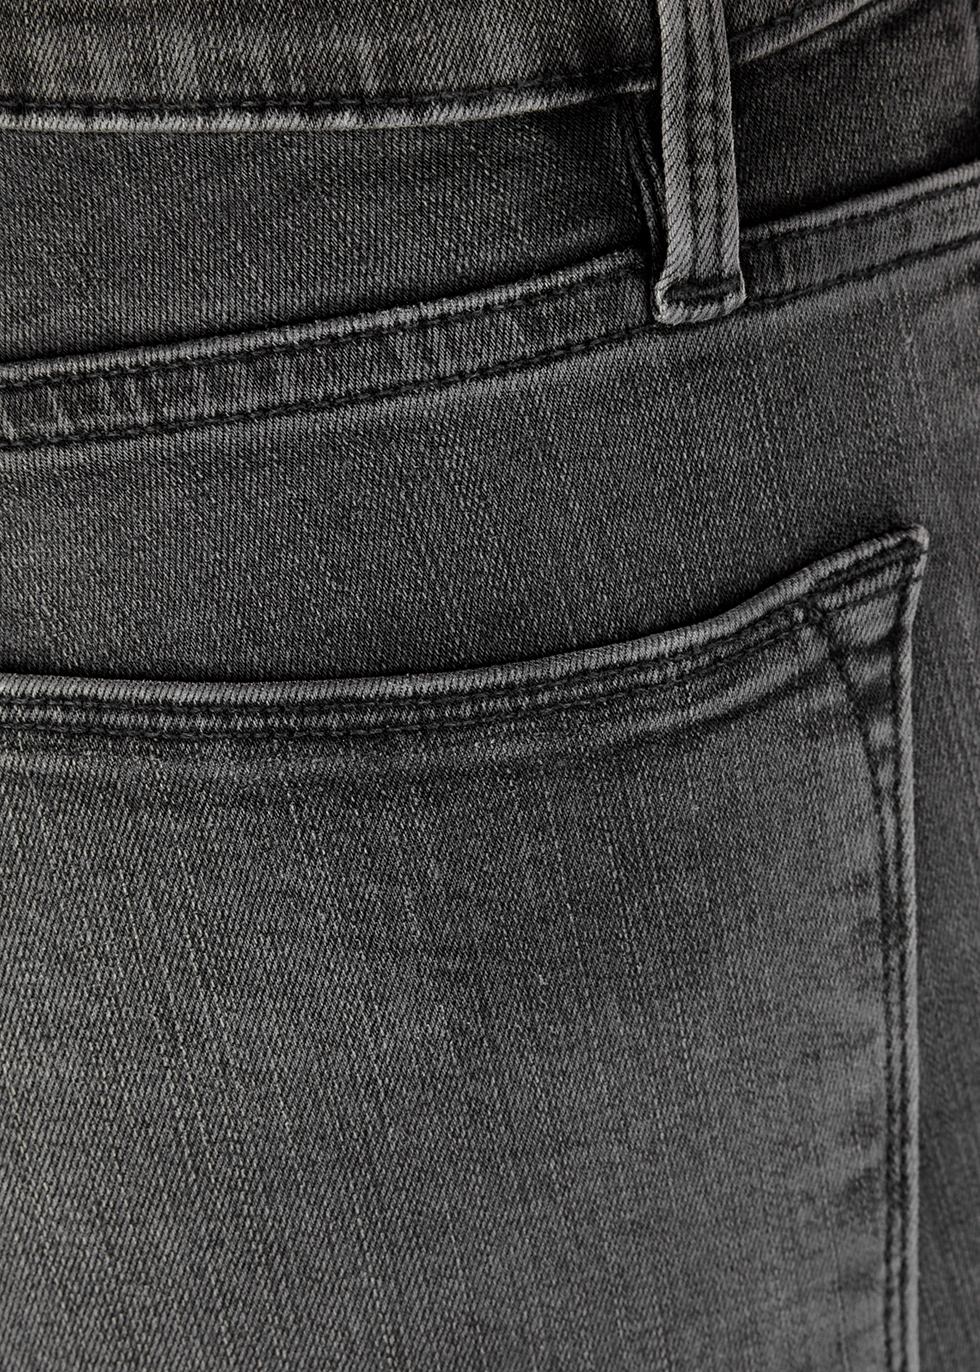 frame gray jeans